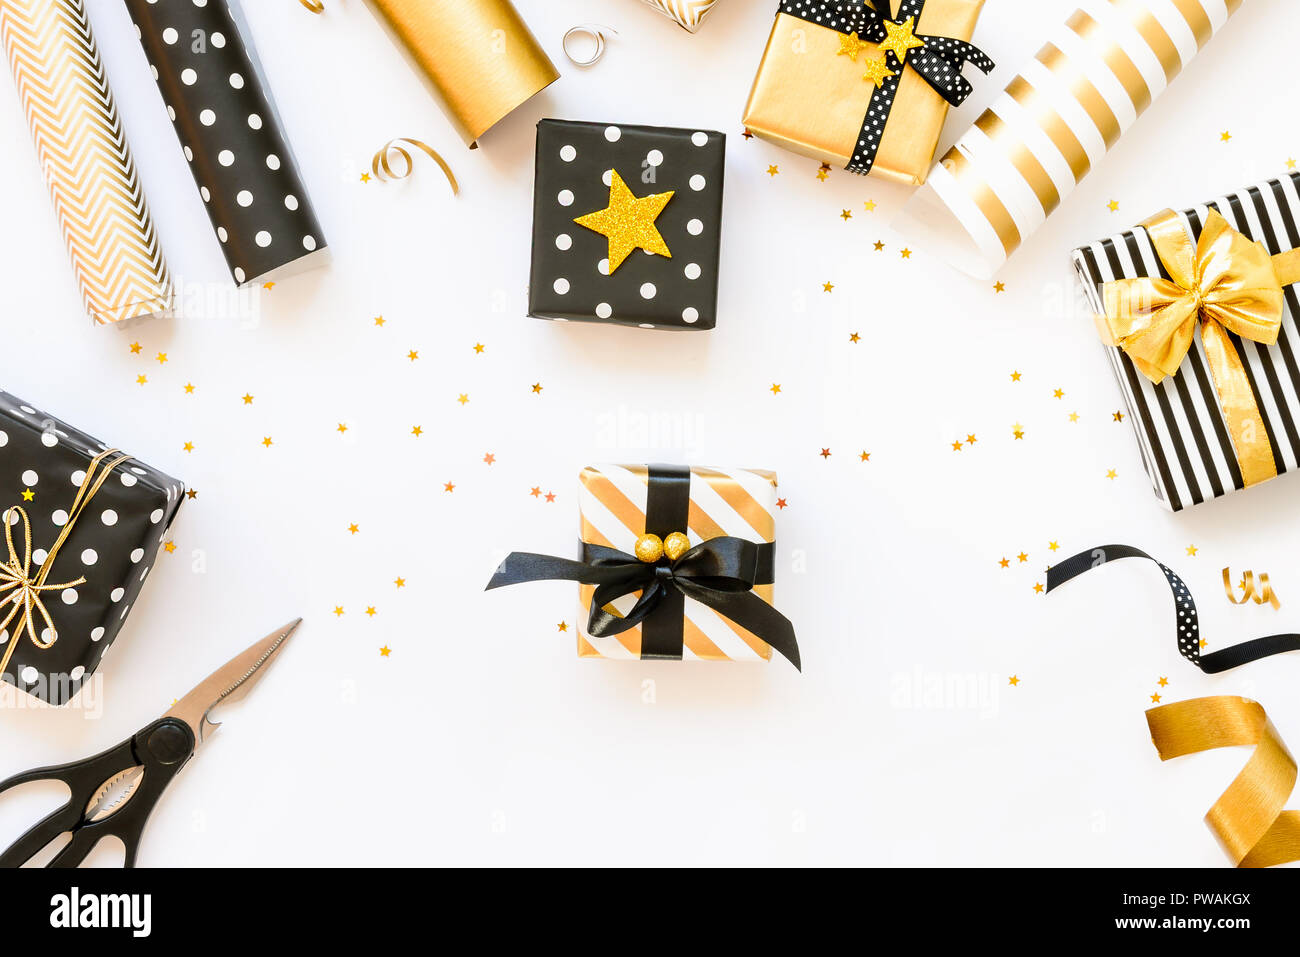 Vue de dessus de boîtes-cadeaux et design dans divers noir, blanc et doré. Un concept de Noël, Nouvel An, anniversaire de l'événement Célébration Banque D'Images